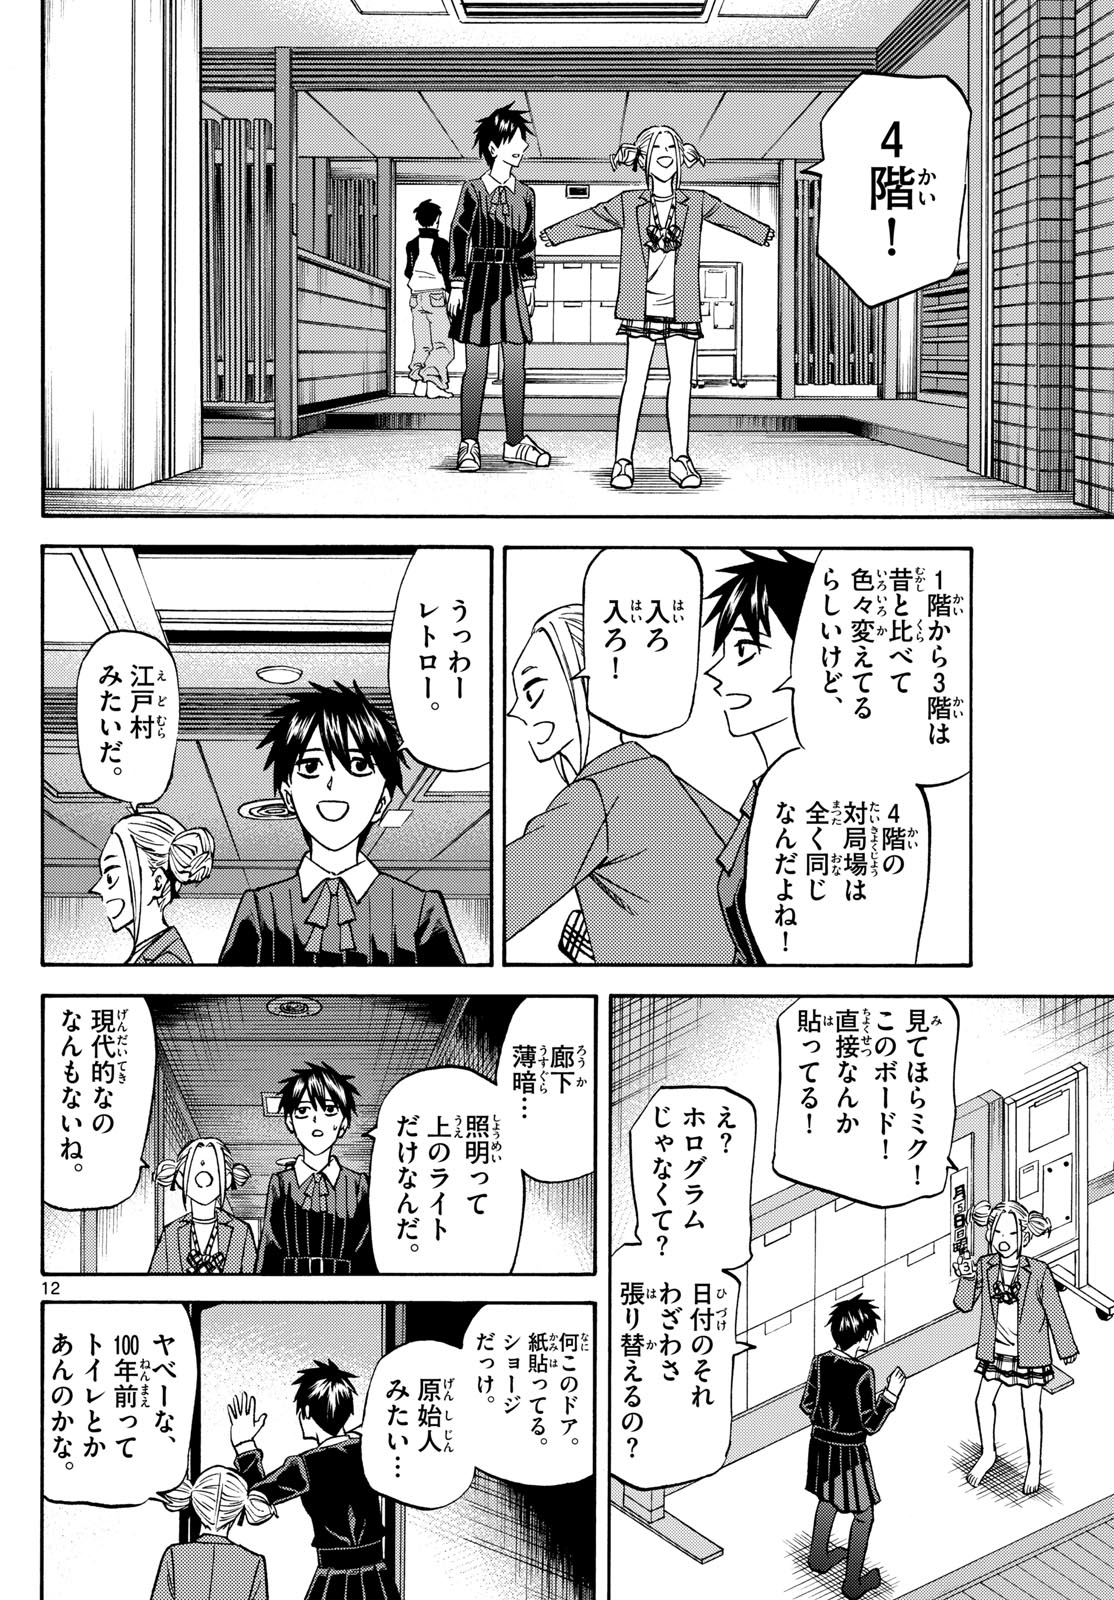 Tatsu to Ichigo - Chapter 183 - Page 12